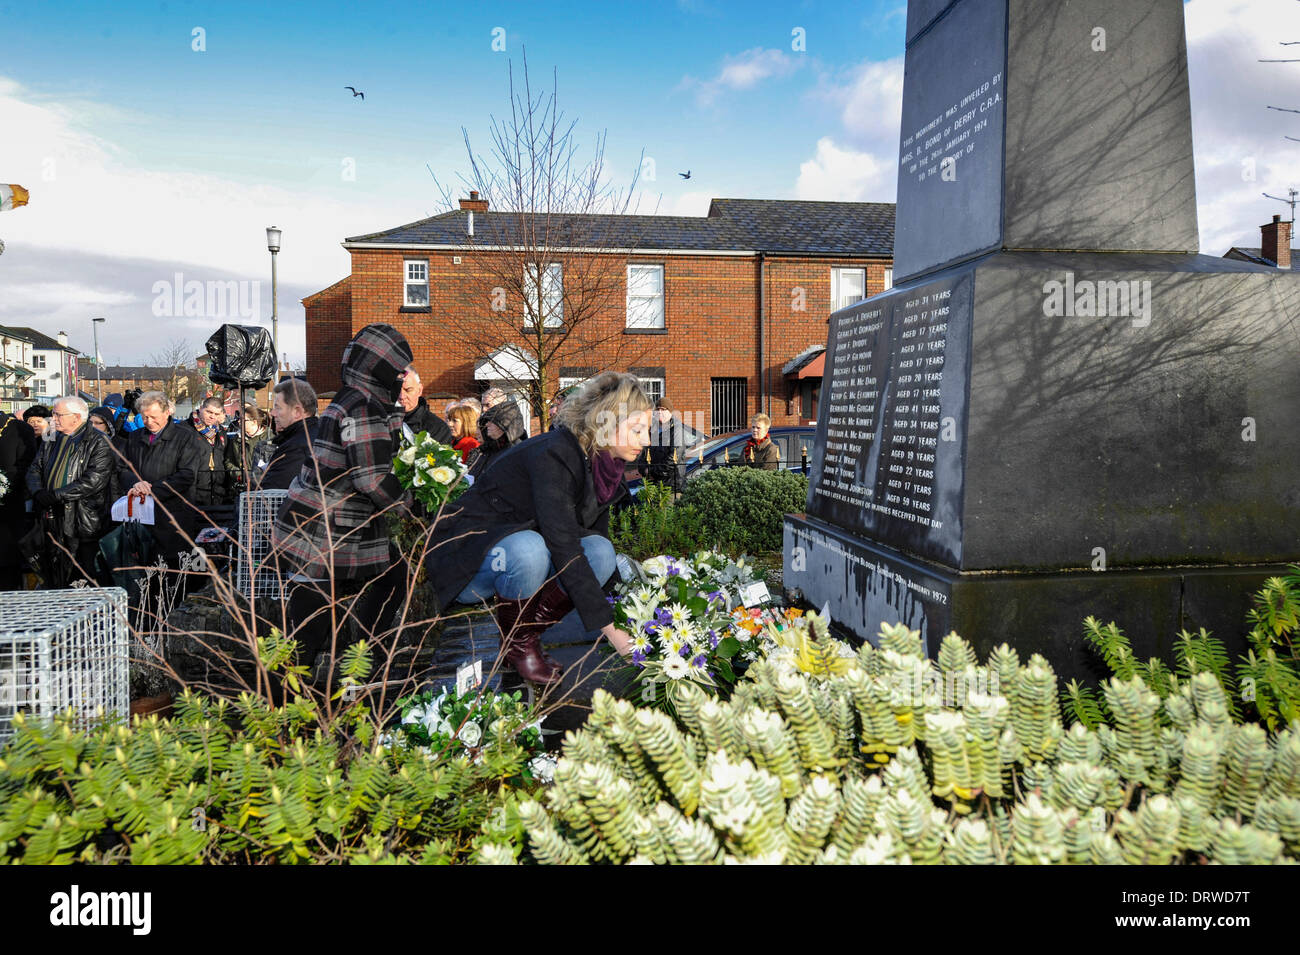 Derry, Londonderry, Irlanda del Nord, Regno Unito, 2 Feb 2014 - domenica sanguinante marzo per la giustizia. Migliaia di persone, comprese le famiglie e i parenti e i sostenitori di raccogliere in Derry per ripercorrere il percorso dei diritti civili marzo il 30 gennaio 1972 quando 13 civili sono stati sparato e ucciso da British paracadutisti, in quello che è diventato noto come Bloody Sunday. Credito: George Sweeney/Alamy Live News Foto Stock